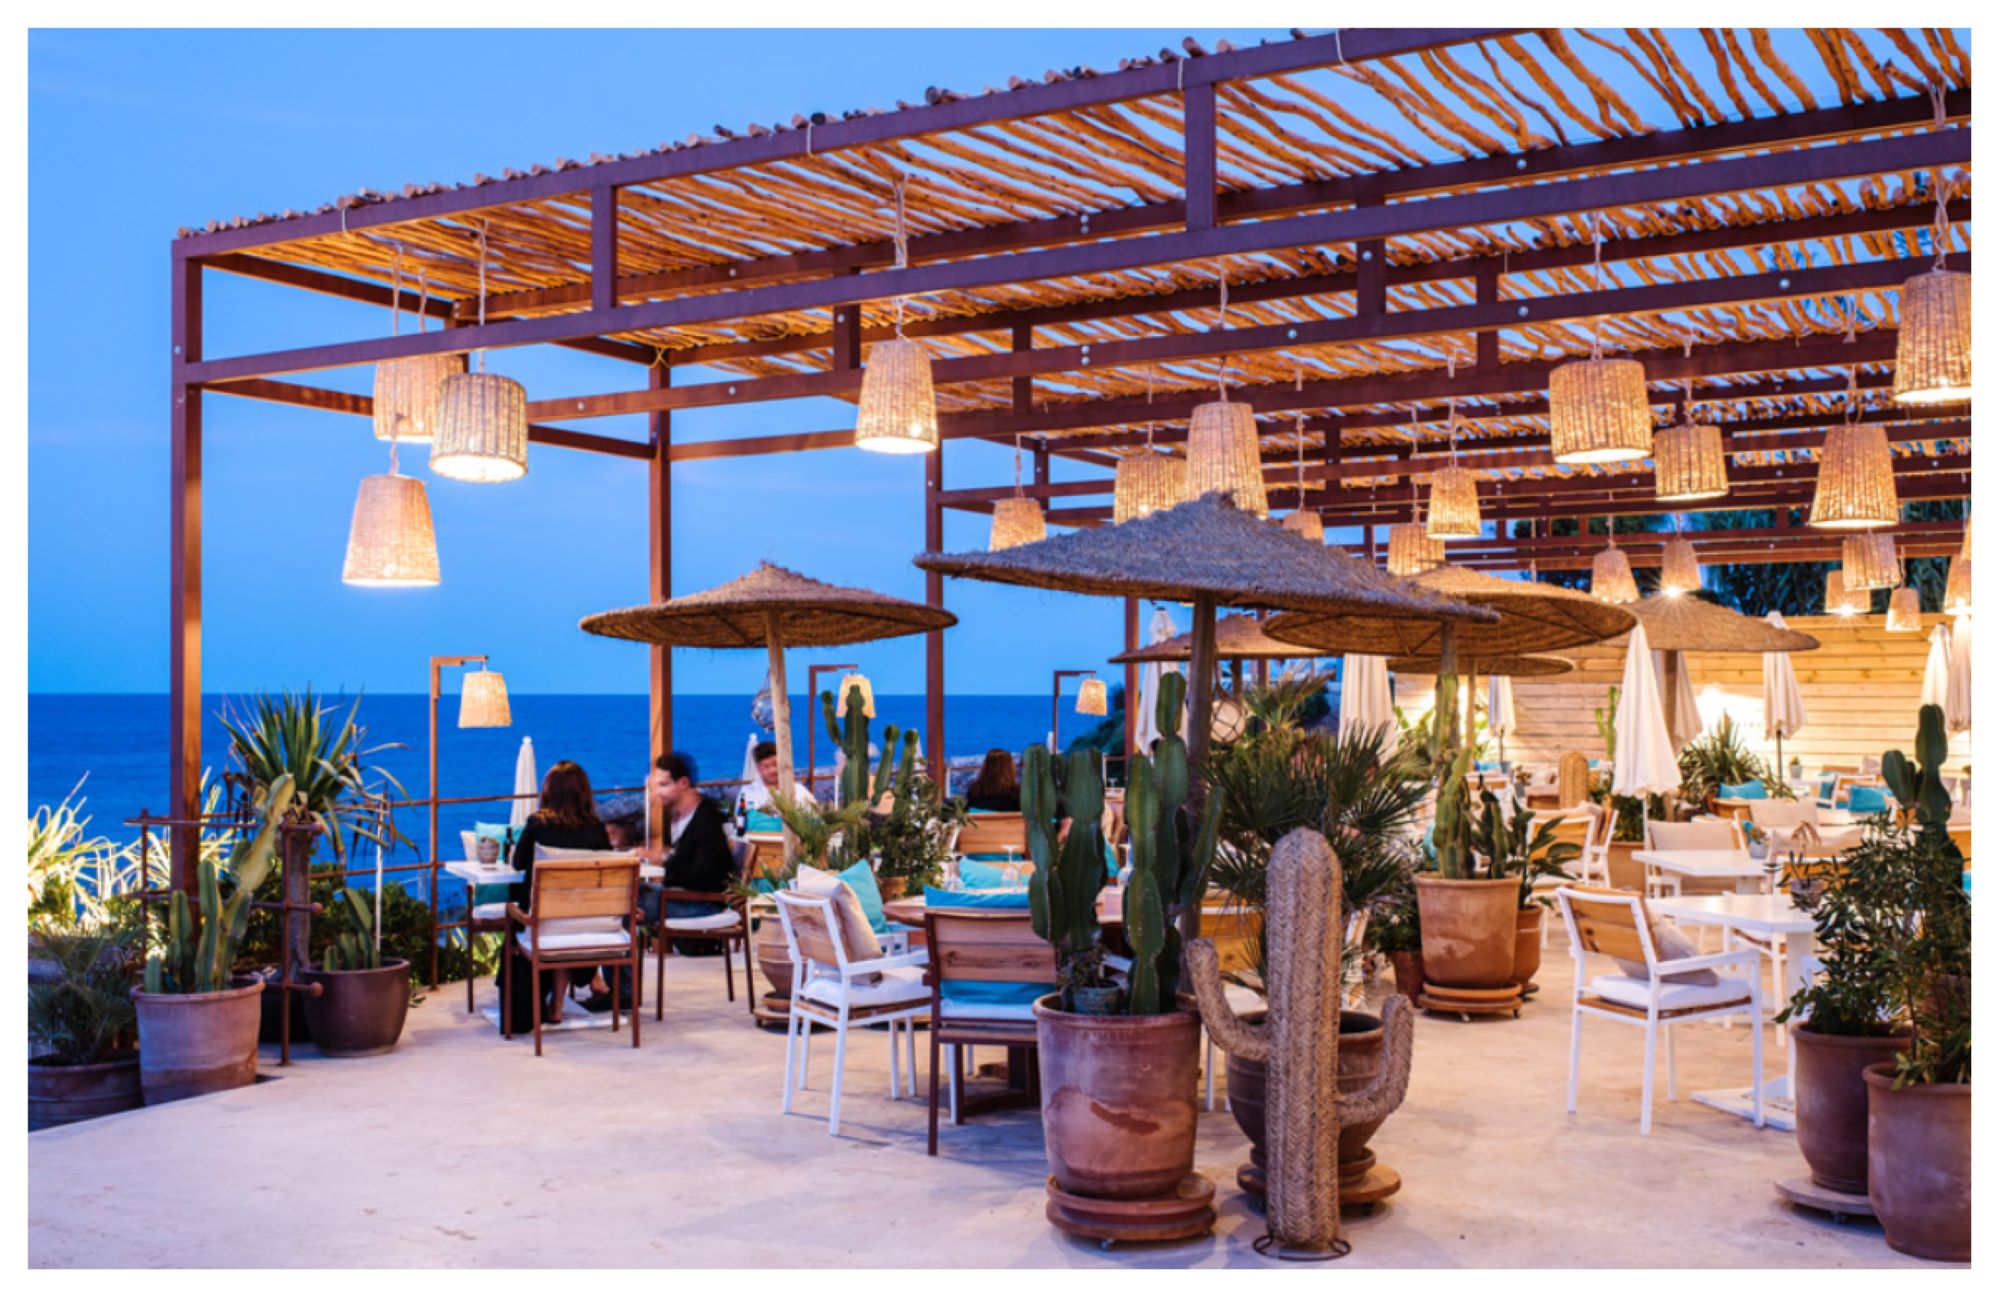 Restaurantes de playa para comer en Ibiza y Formentera